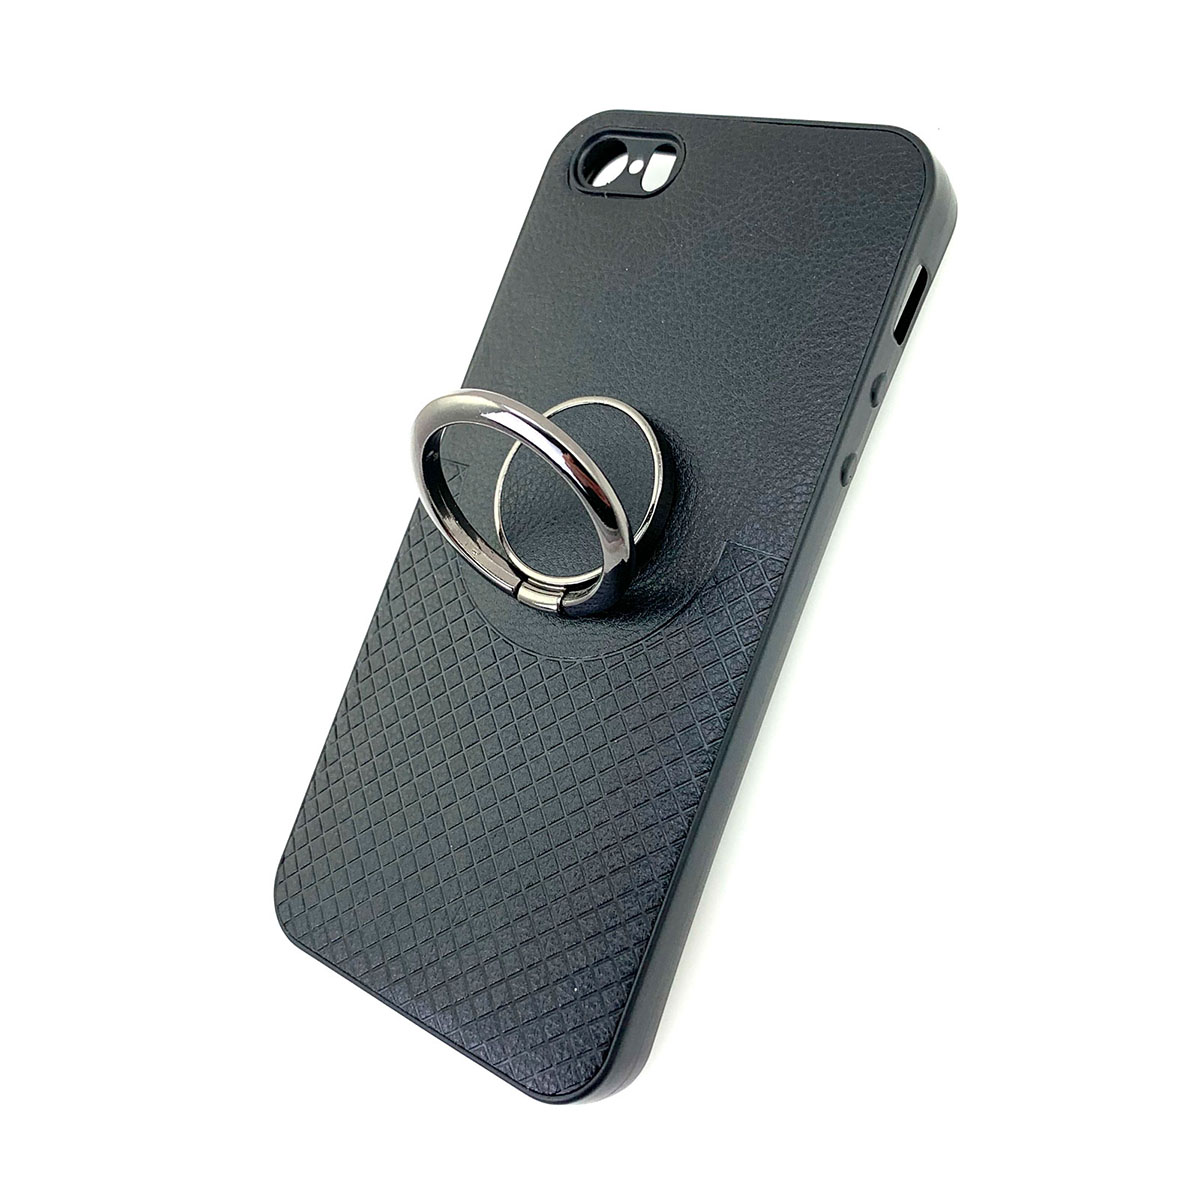 Чехол накладка для APPLE iPhone 5, 5S, SE силикон, под кожу, кольцо держатель, цвет черный.